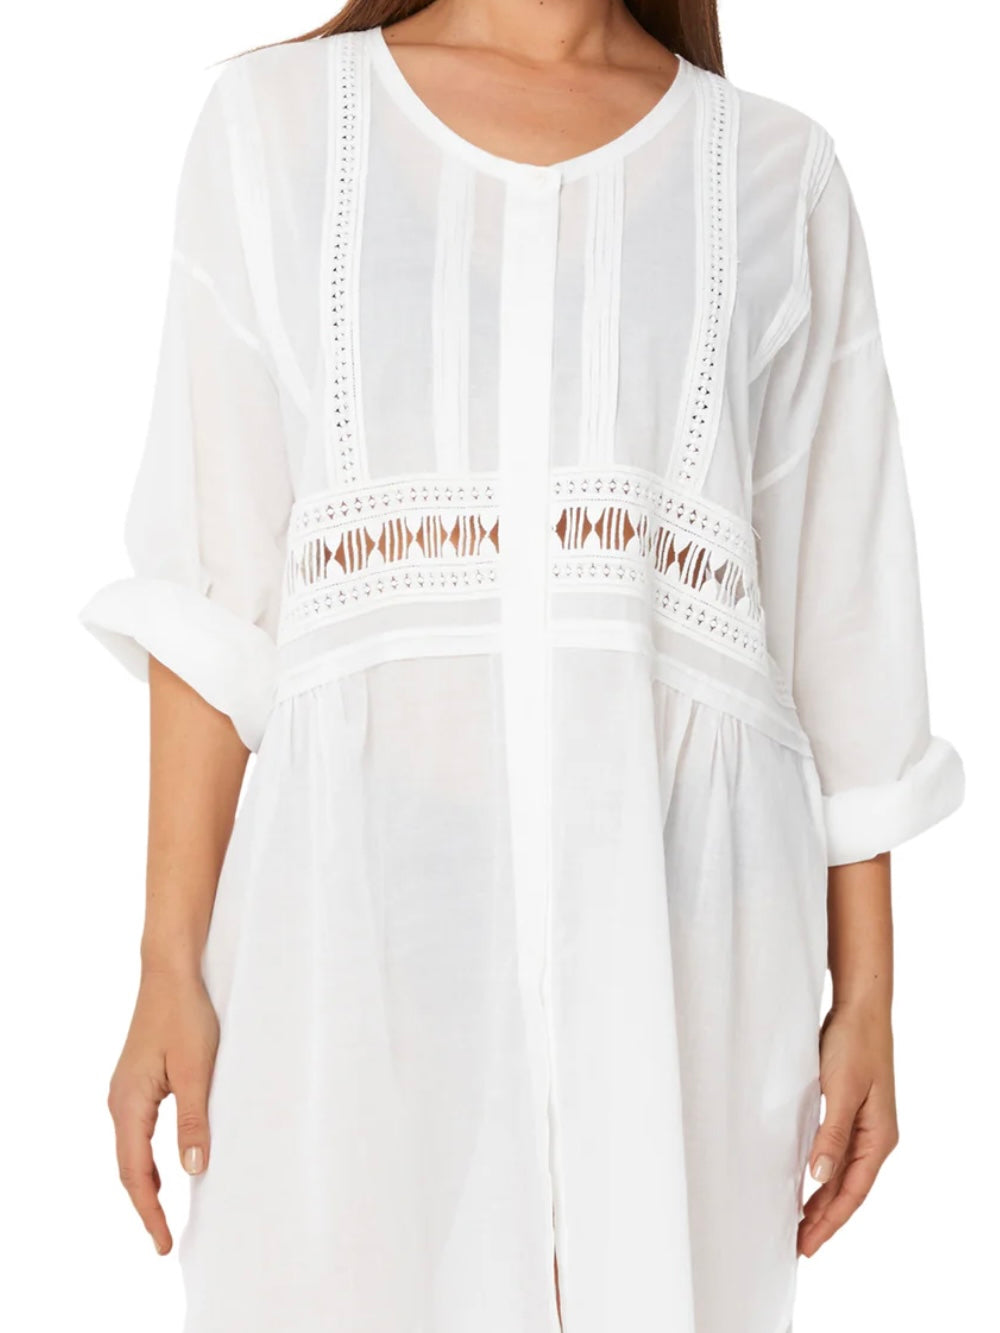 Monte & Lou ML Separates Resort Shirt Dress in White